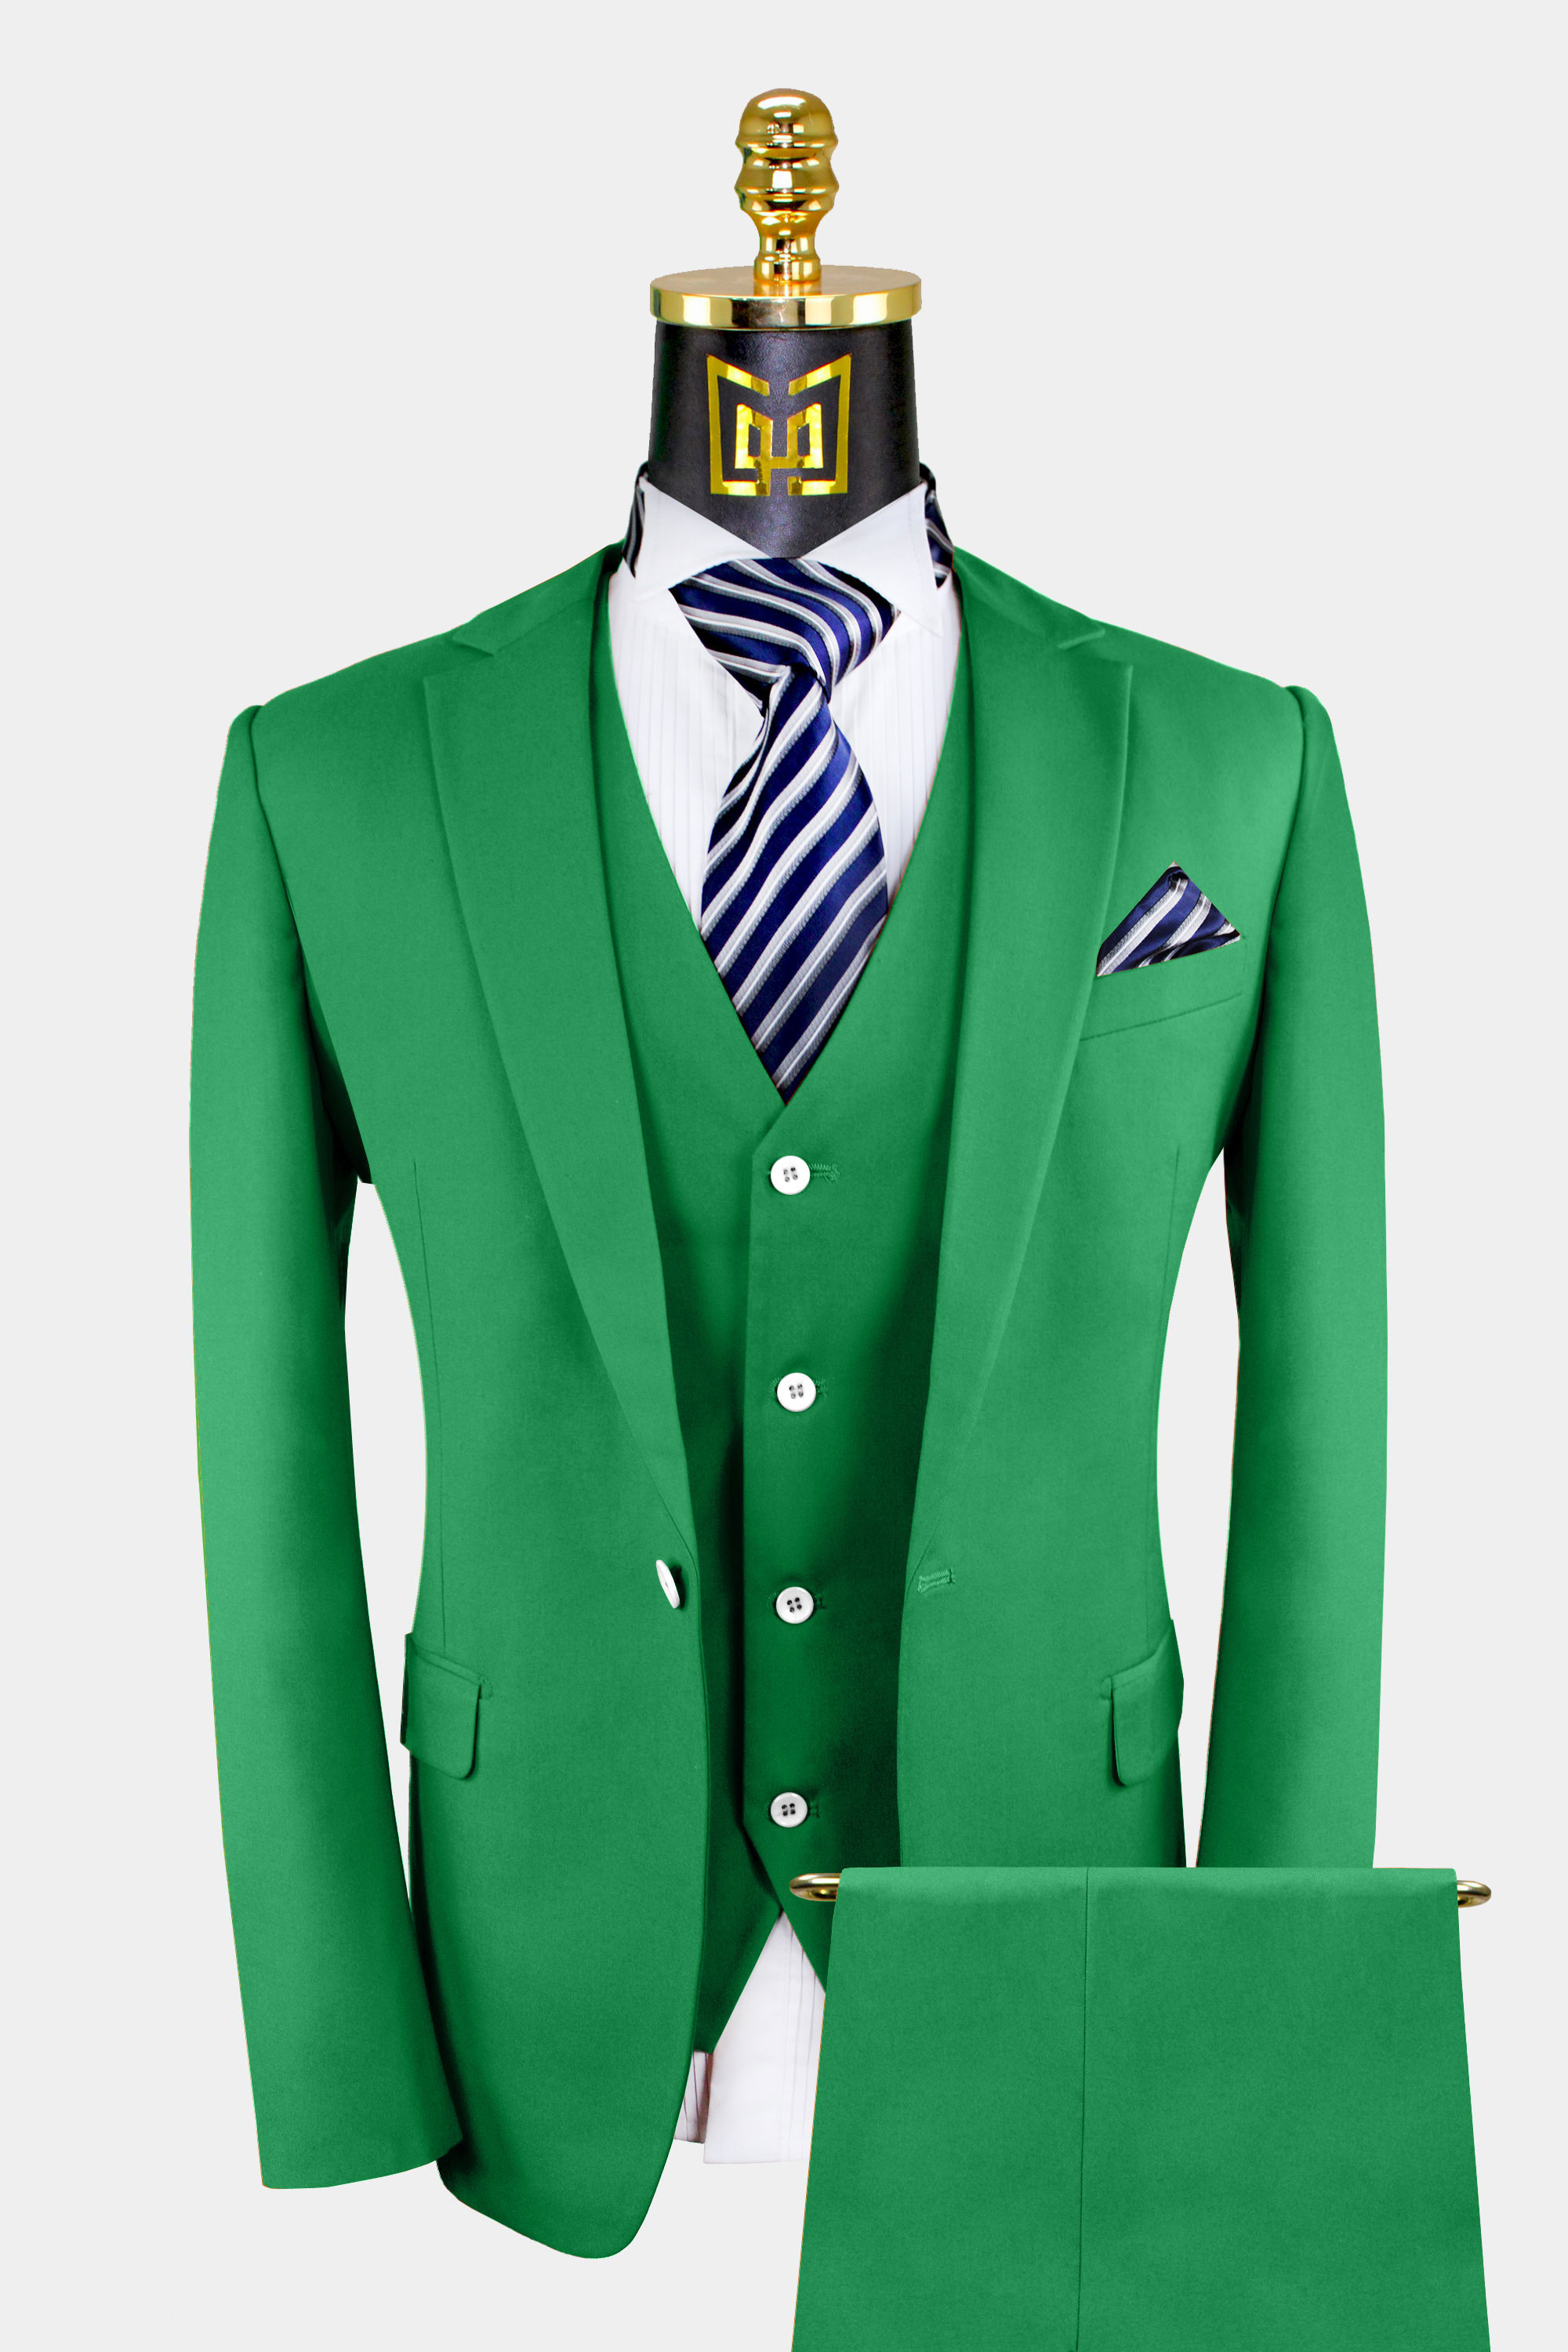 3-Piece-Green-Suit-For-Men-Wedding-Groom-Prom-Tuxedo-from-Gentlemansguru.com